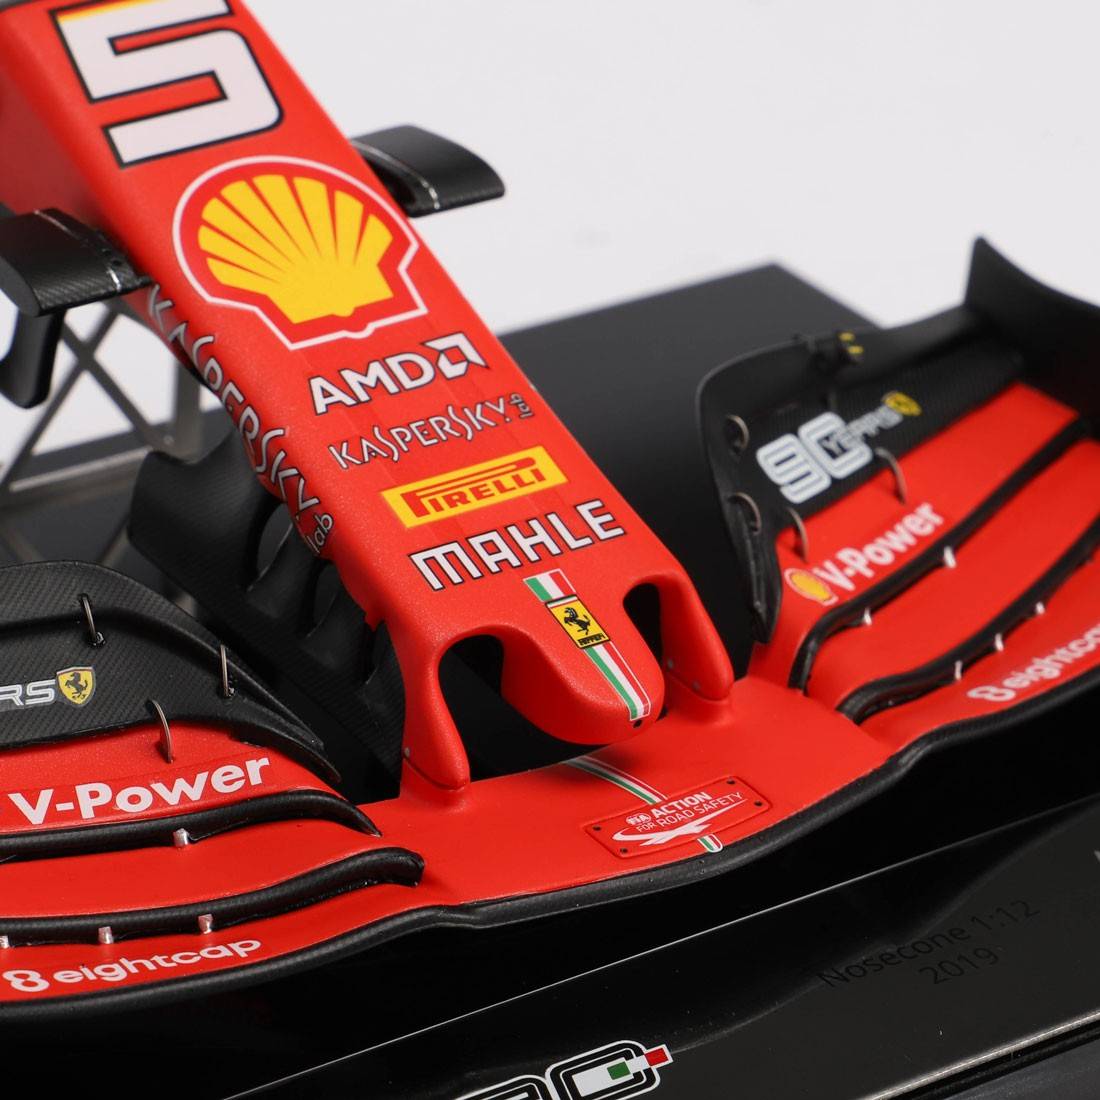 Sebastian Vettel 2019 1:12 Scuderia Ferrari SF90 Scale Model Nosecone